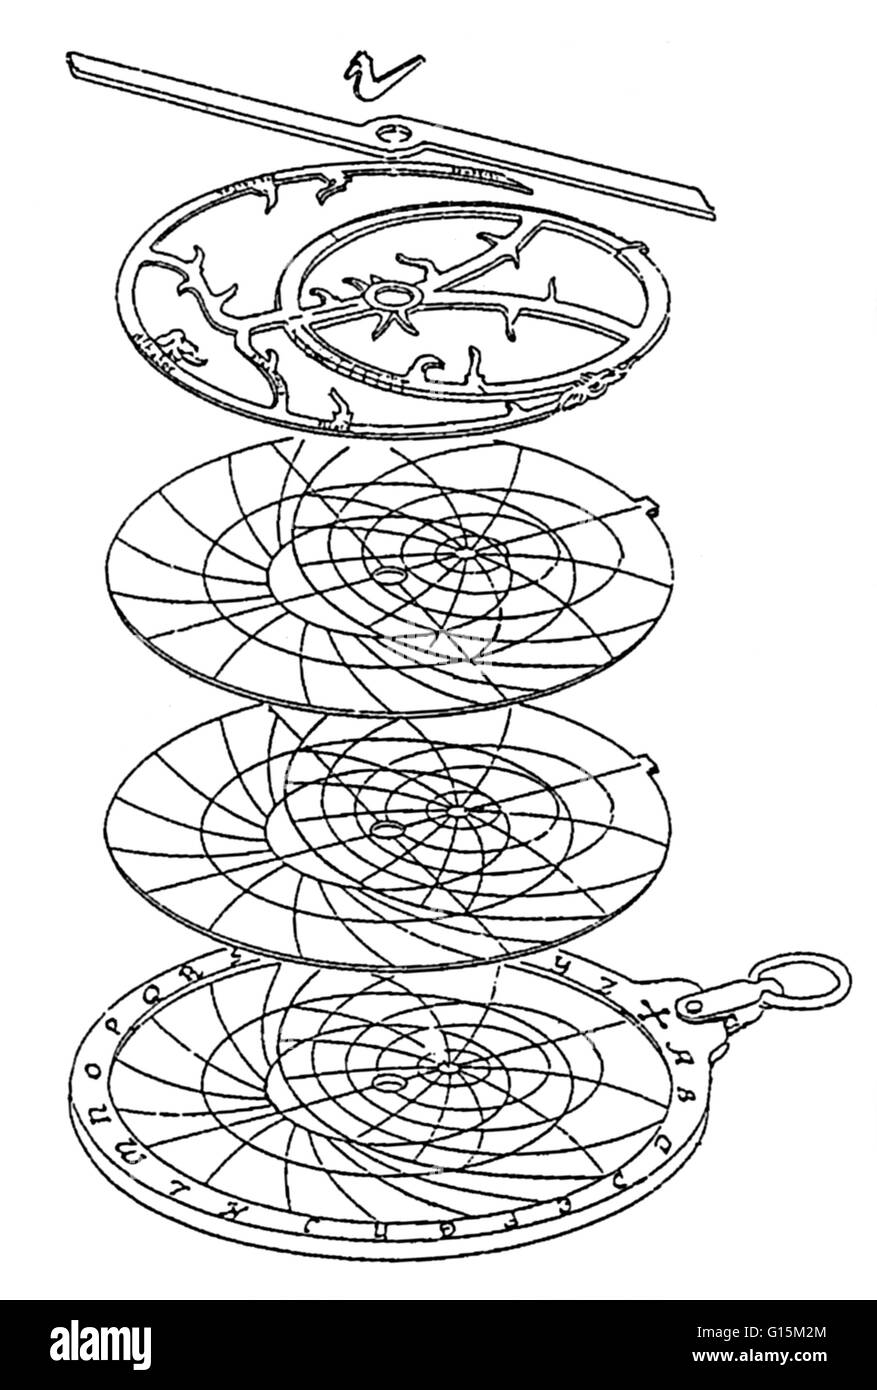 Un astrolabio è un antico strumento ampiamente utilizzato nel medioevo dai navigatori e gli astronomi per determinare la latitudine, la longitudine e l'ora del giorno. Un astrolabio è costituito da un disco, chiamato il mater, che è abbastanza profondo per tenere una o più lastre piane ca Foto Stock